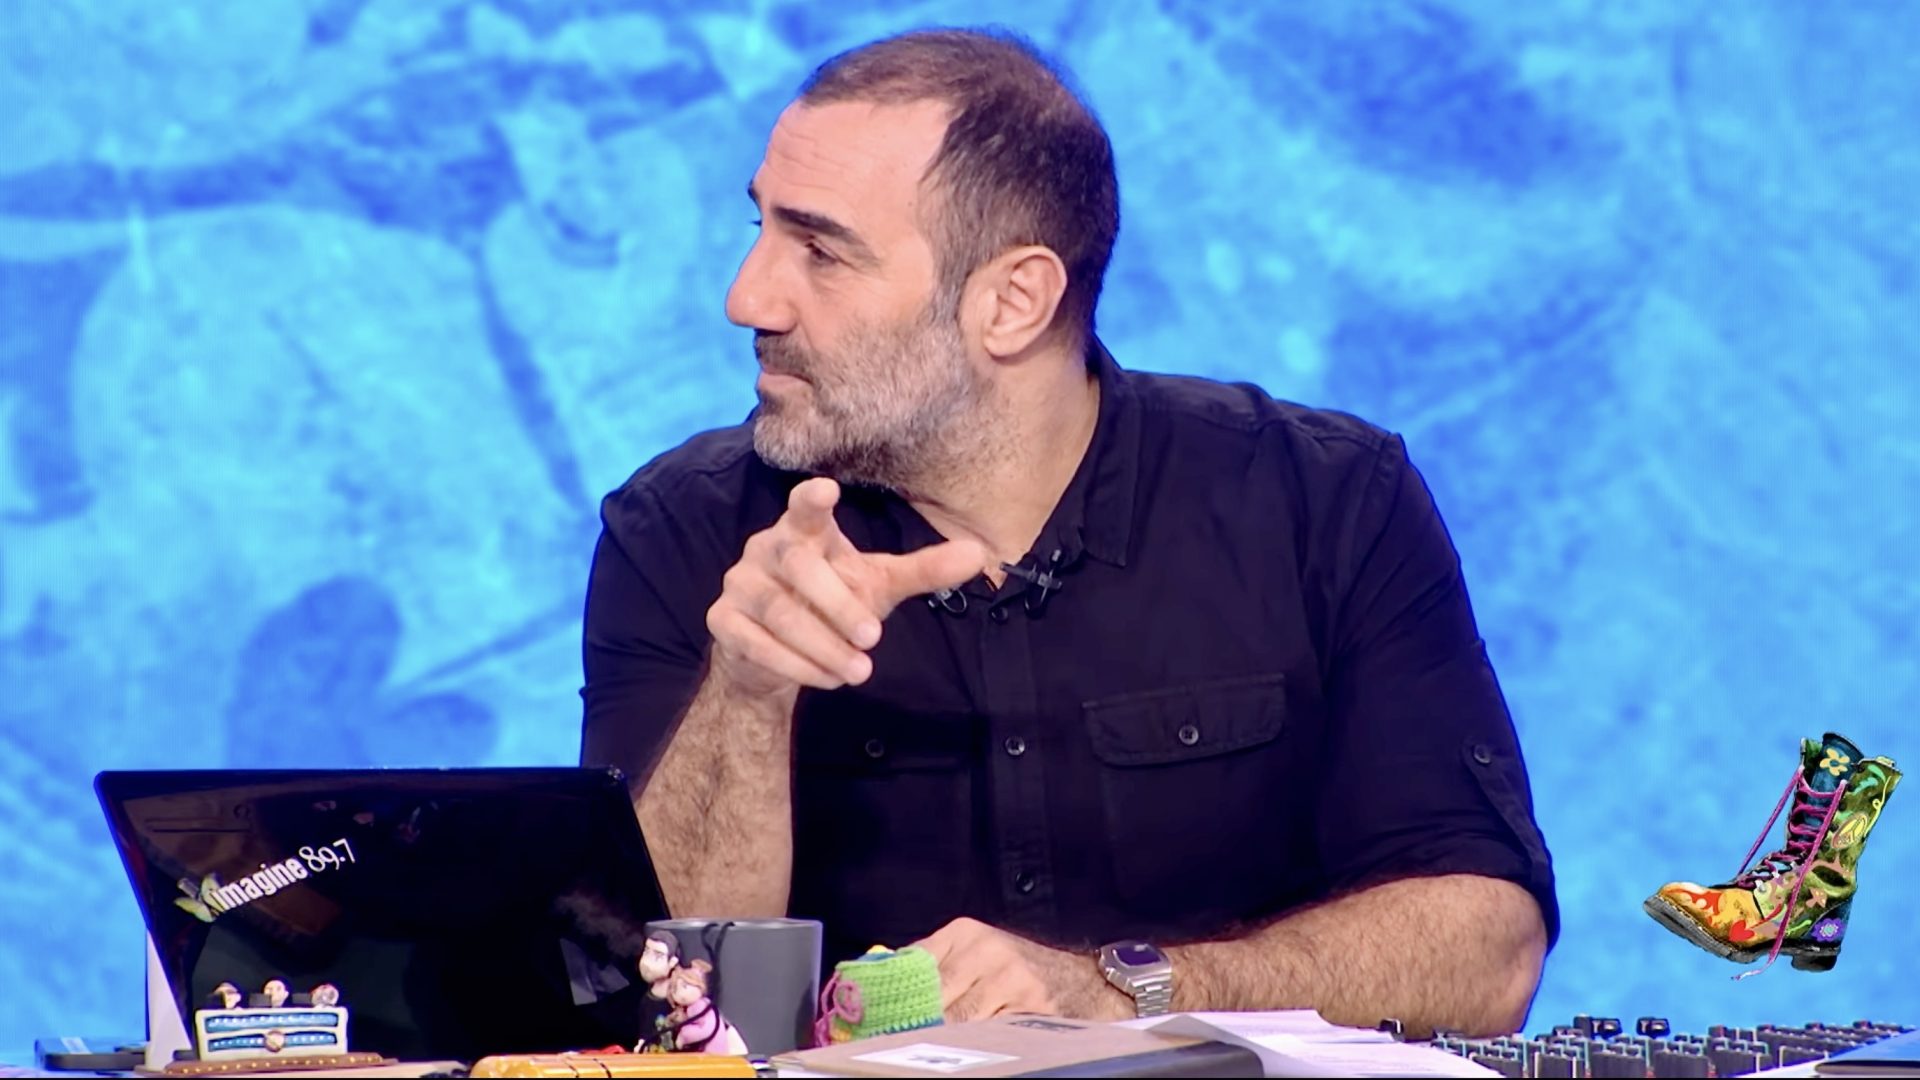 Υπάρχουν όρια στη σάτιρα- Αντώνης Κανάκης σε Στέφανο Κασσελάκη: «Άντε κουκλίτσα μου, κάνε μας τη χάρη»